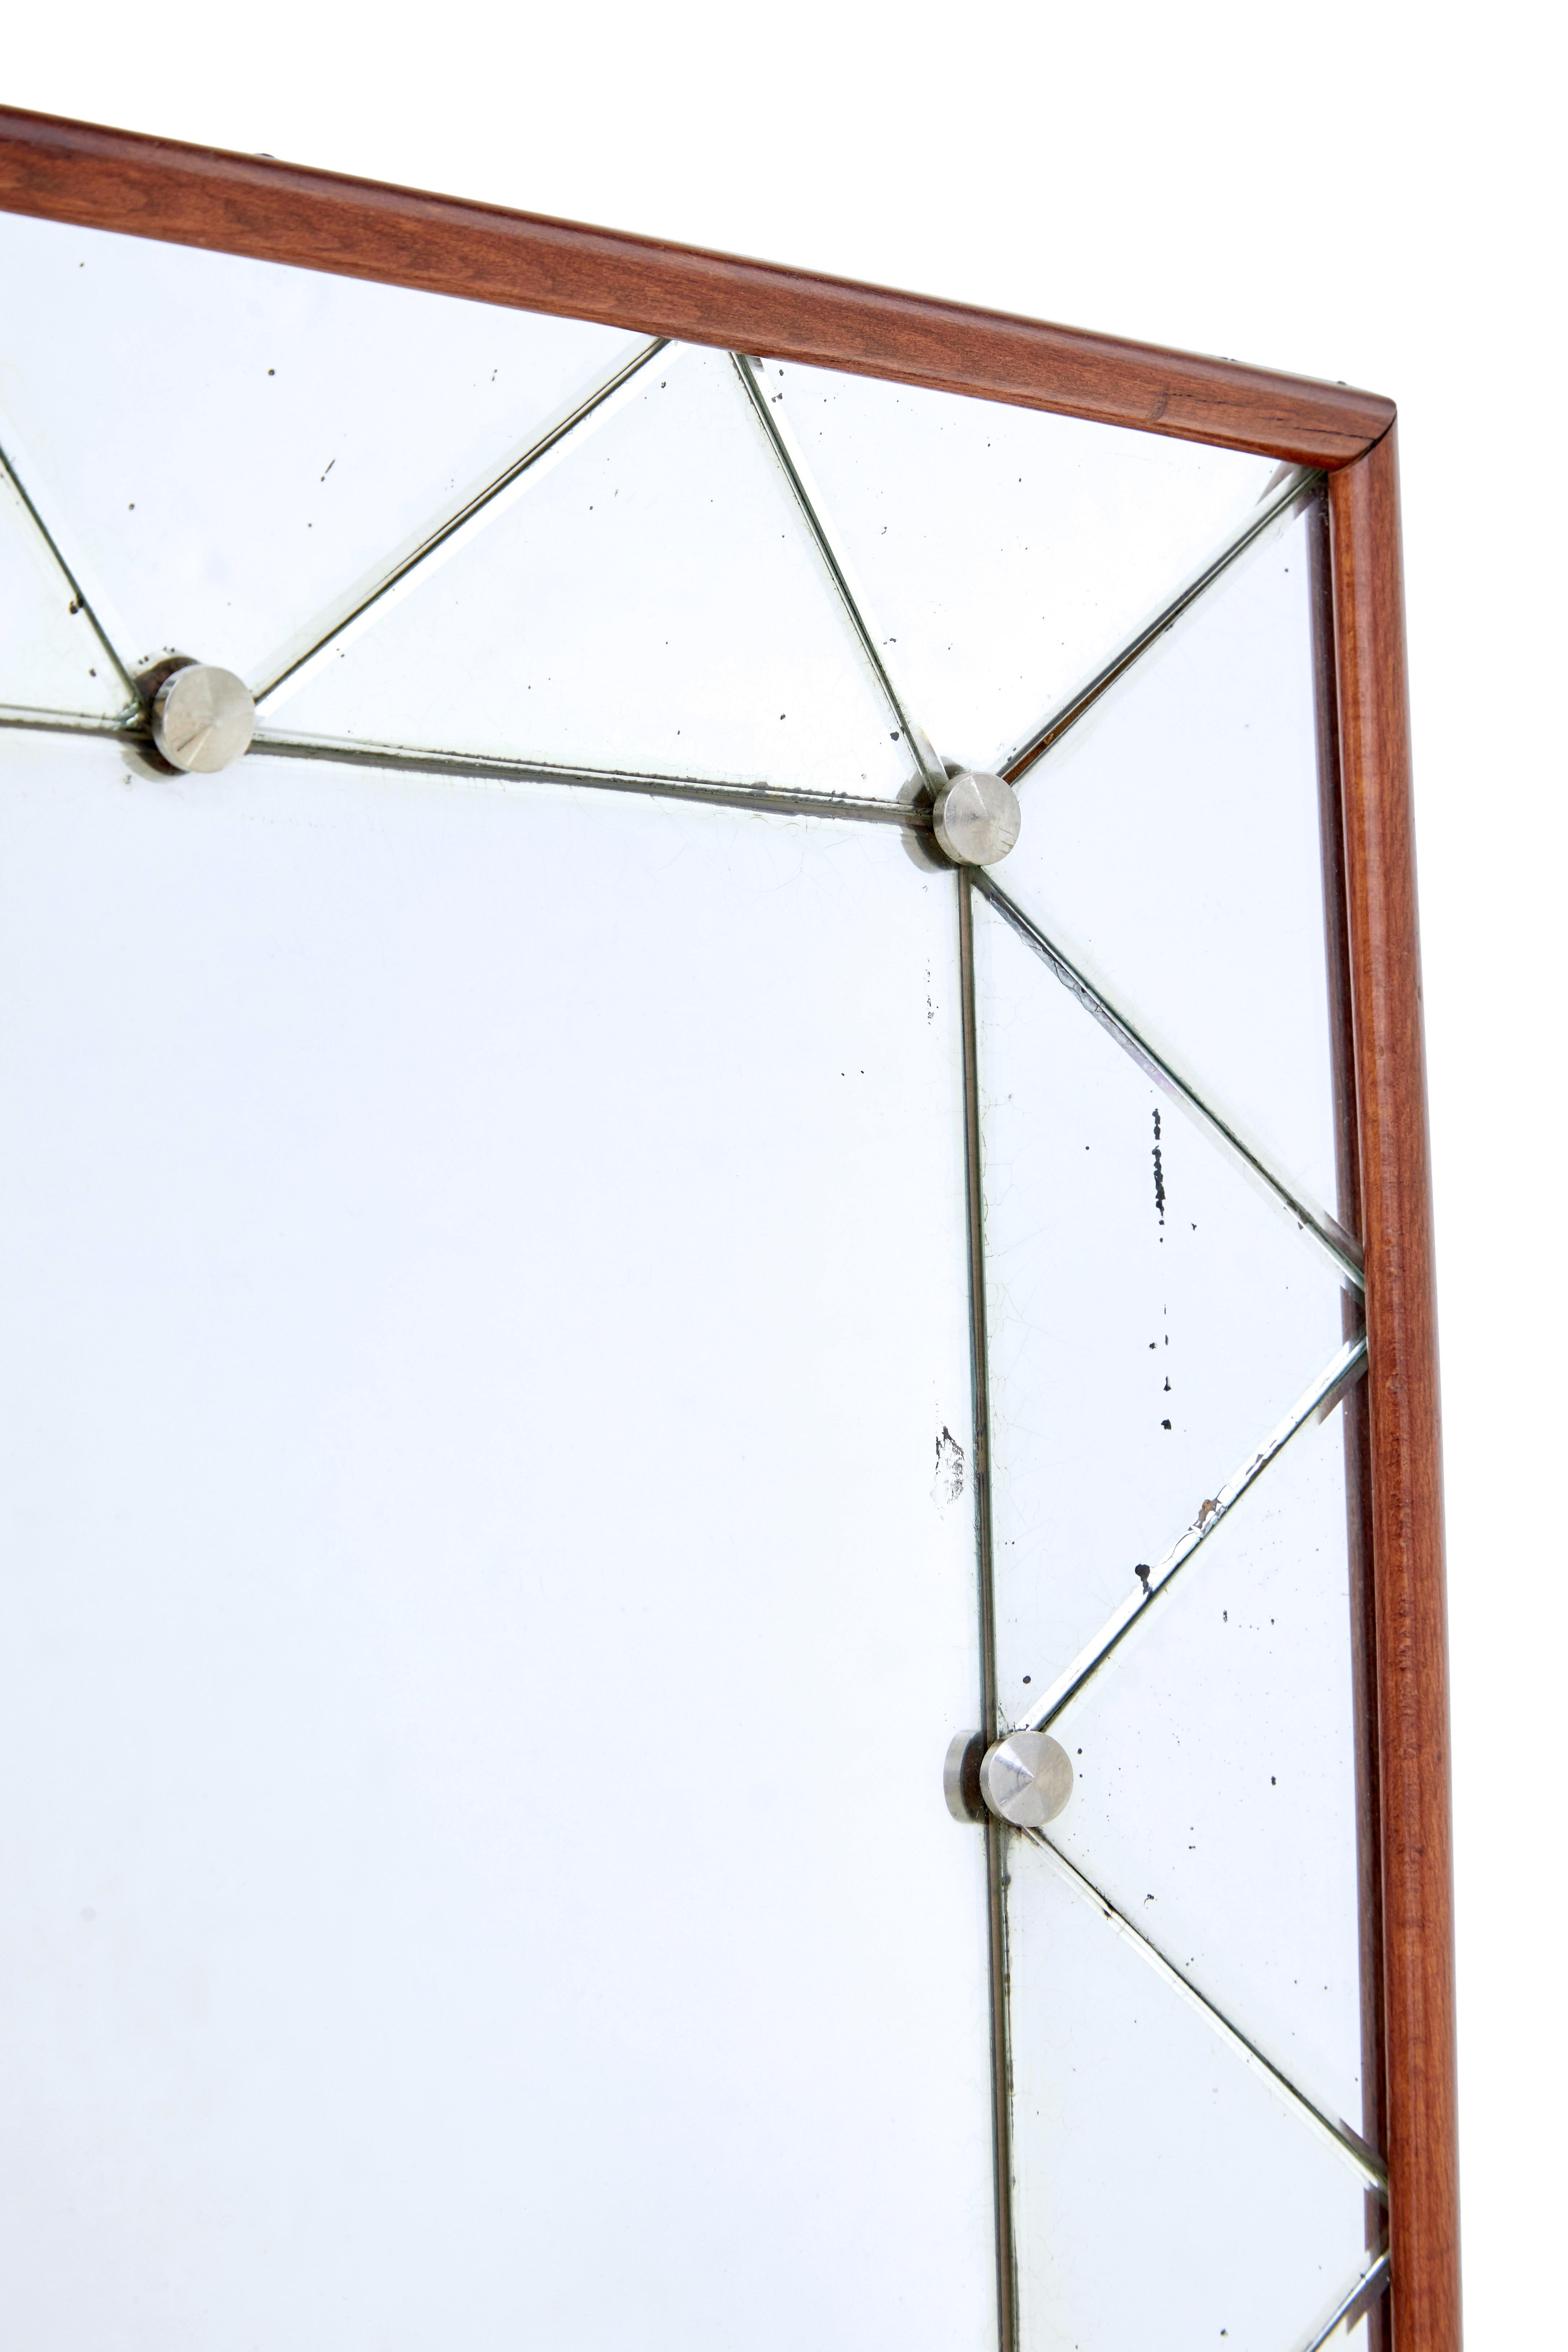 Schwedischer Wandspiegel aus der Mitte des Jahrhunderts, um 1960.

Umgekehrter kissenförmiger Spiegel, ideal für die meisten ROOMS im Haus.

Rahmen aus Teakholz, mit einem zentralen rechteckigen Spiegel, umgeben von einer Umrandung aus dreieckig